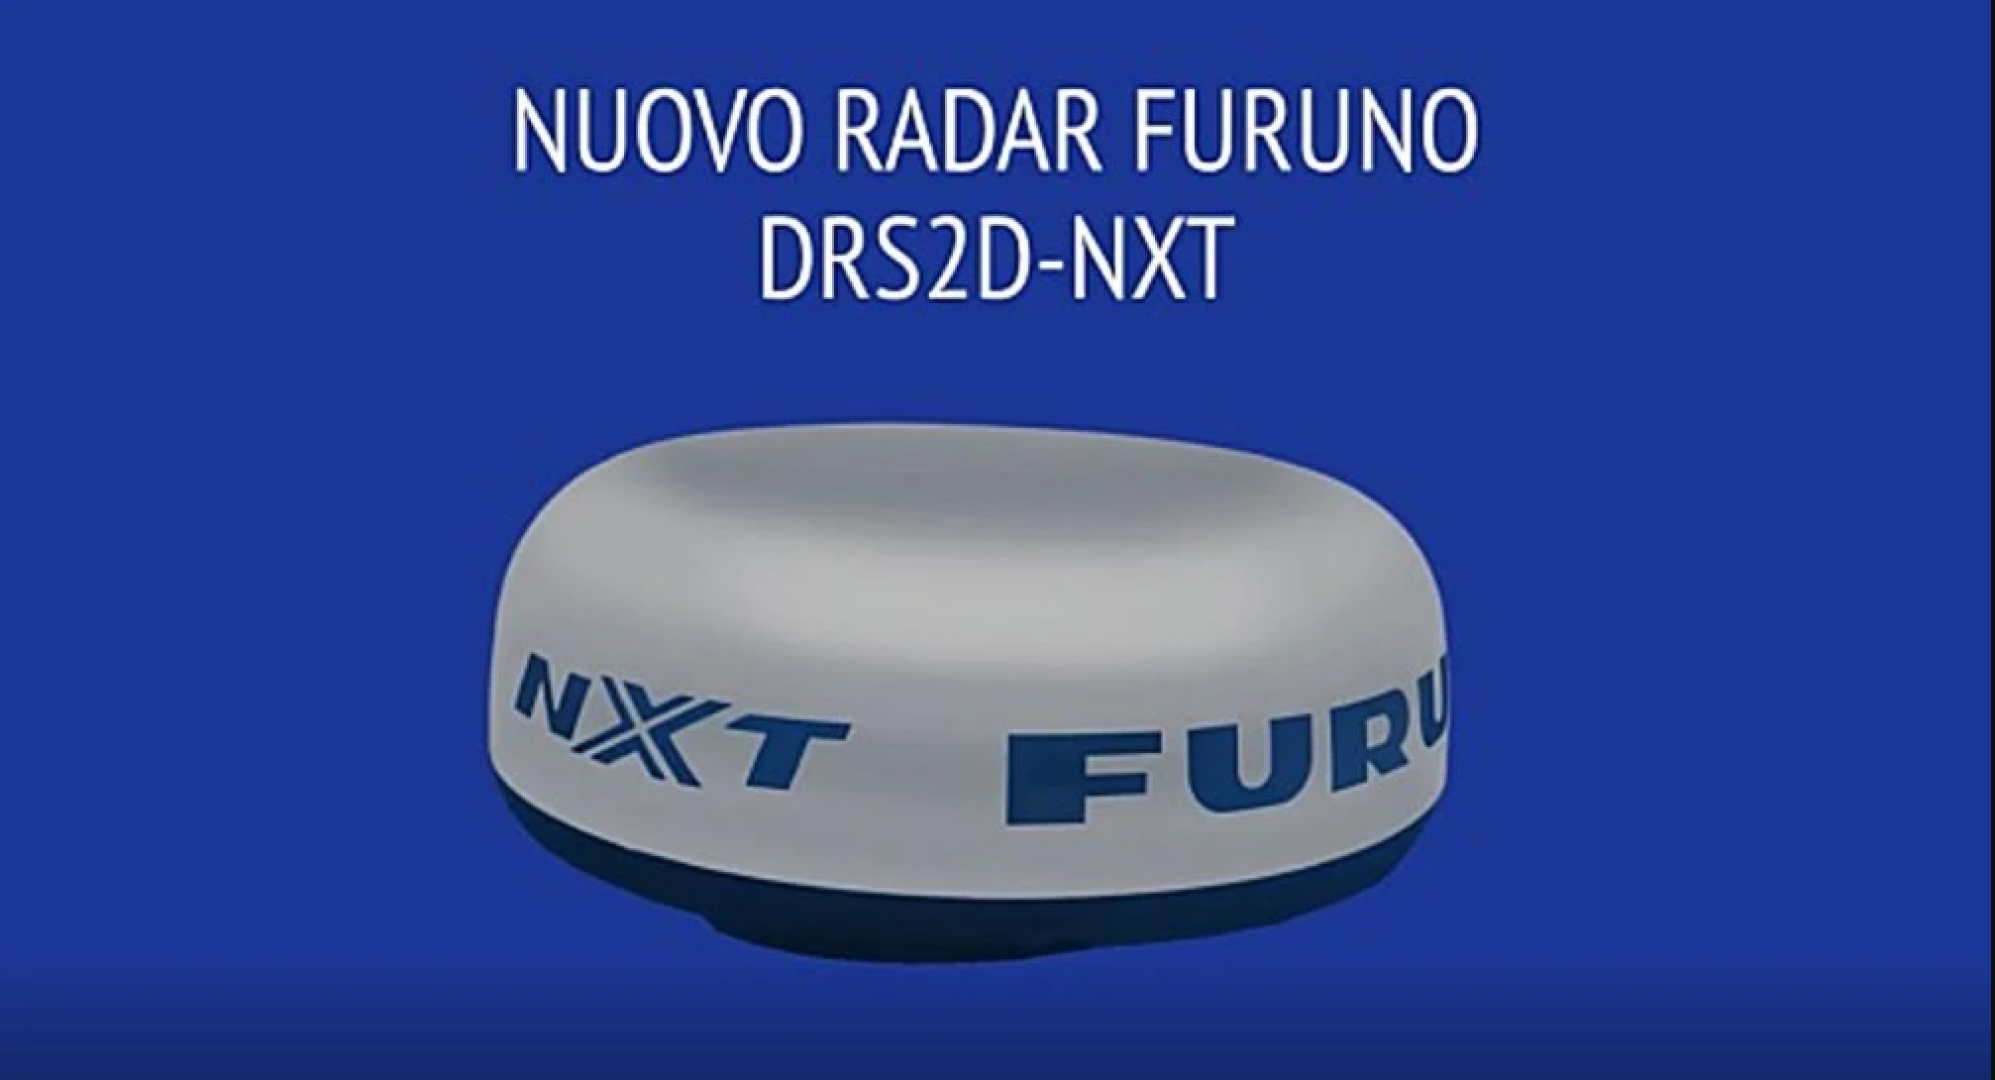 Furuno DRS2DNXT offre grandi funzionalità radar in un modello piccolo e compatto